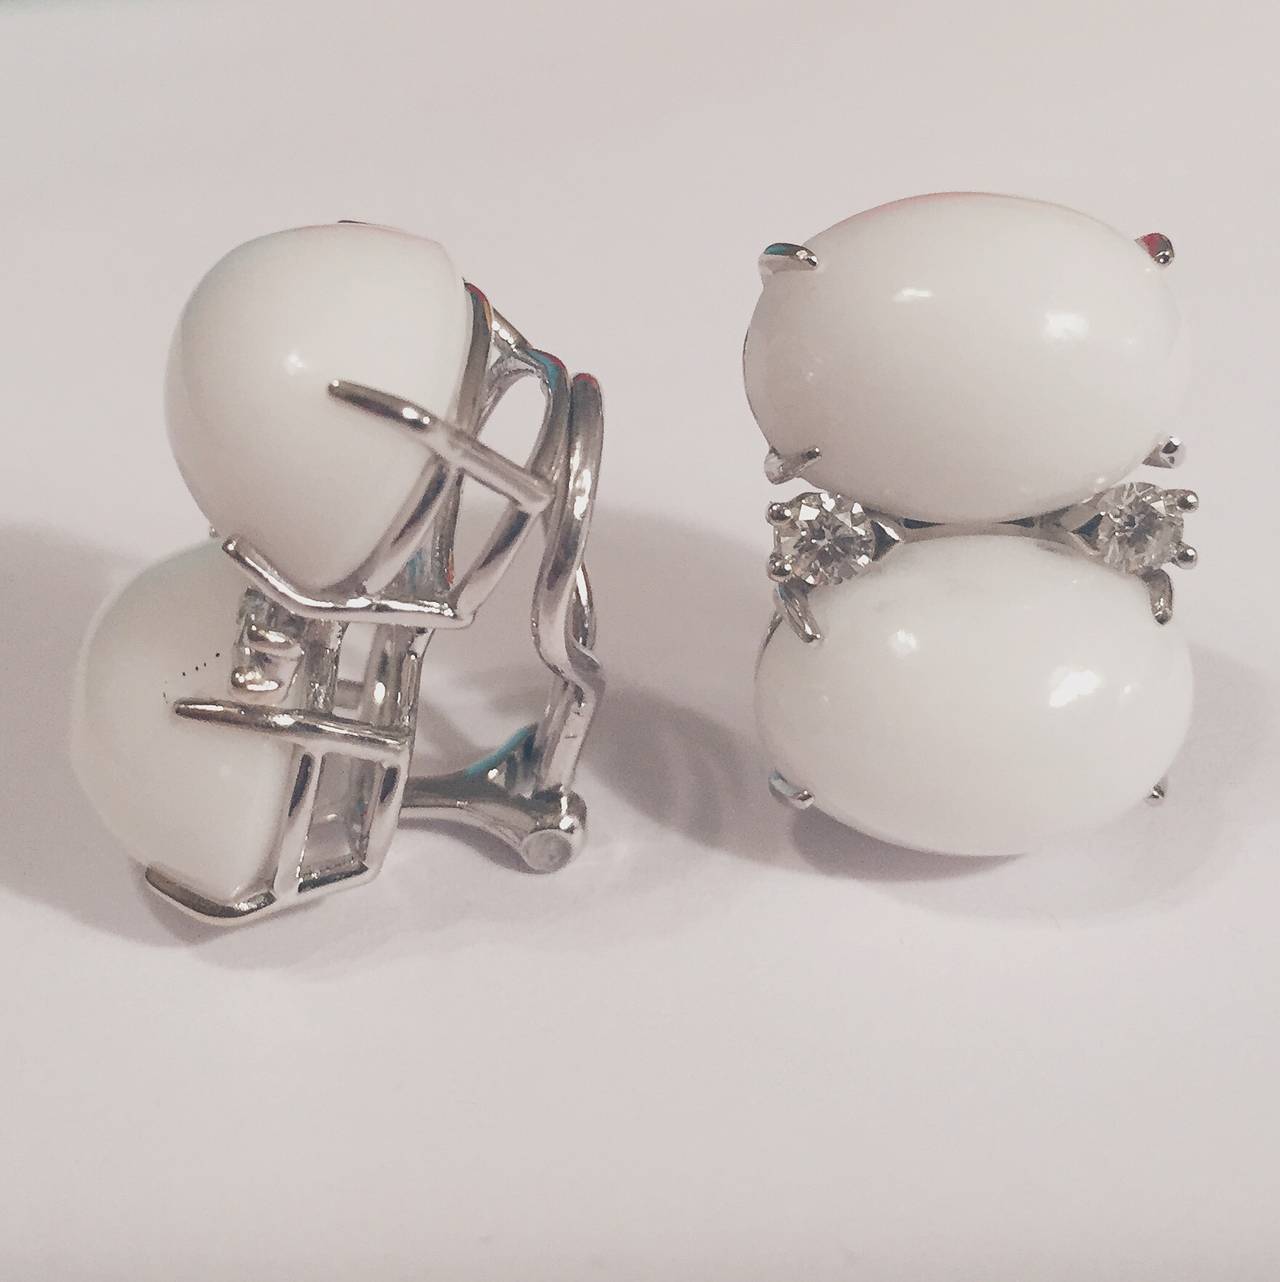 18kt Weißgold Grande  GUM DROP™ Ohrringe mit Cabochon aus weißer Jade und vier Diamanten ~-.60cts - Der größte der Kollektion!

Beide Steine sind gleich groß - sie messen 5/8